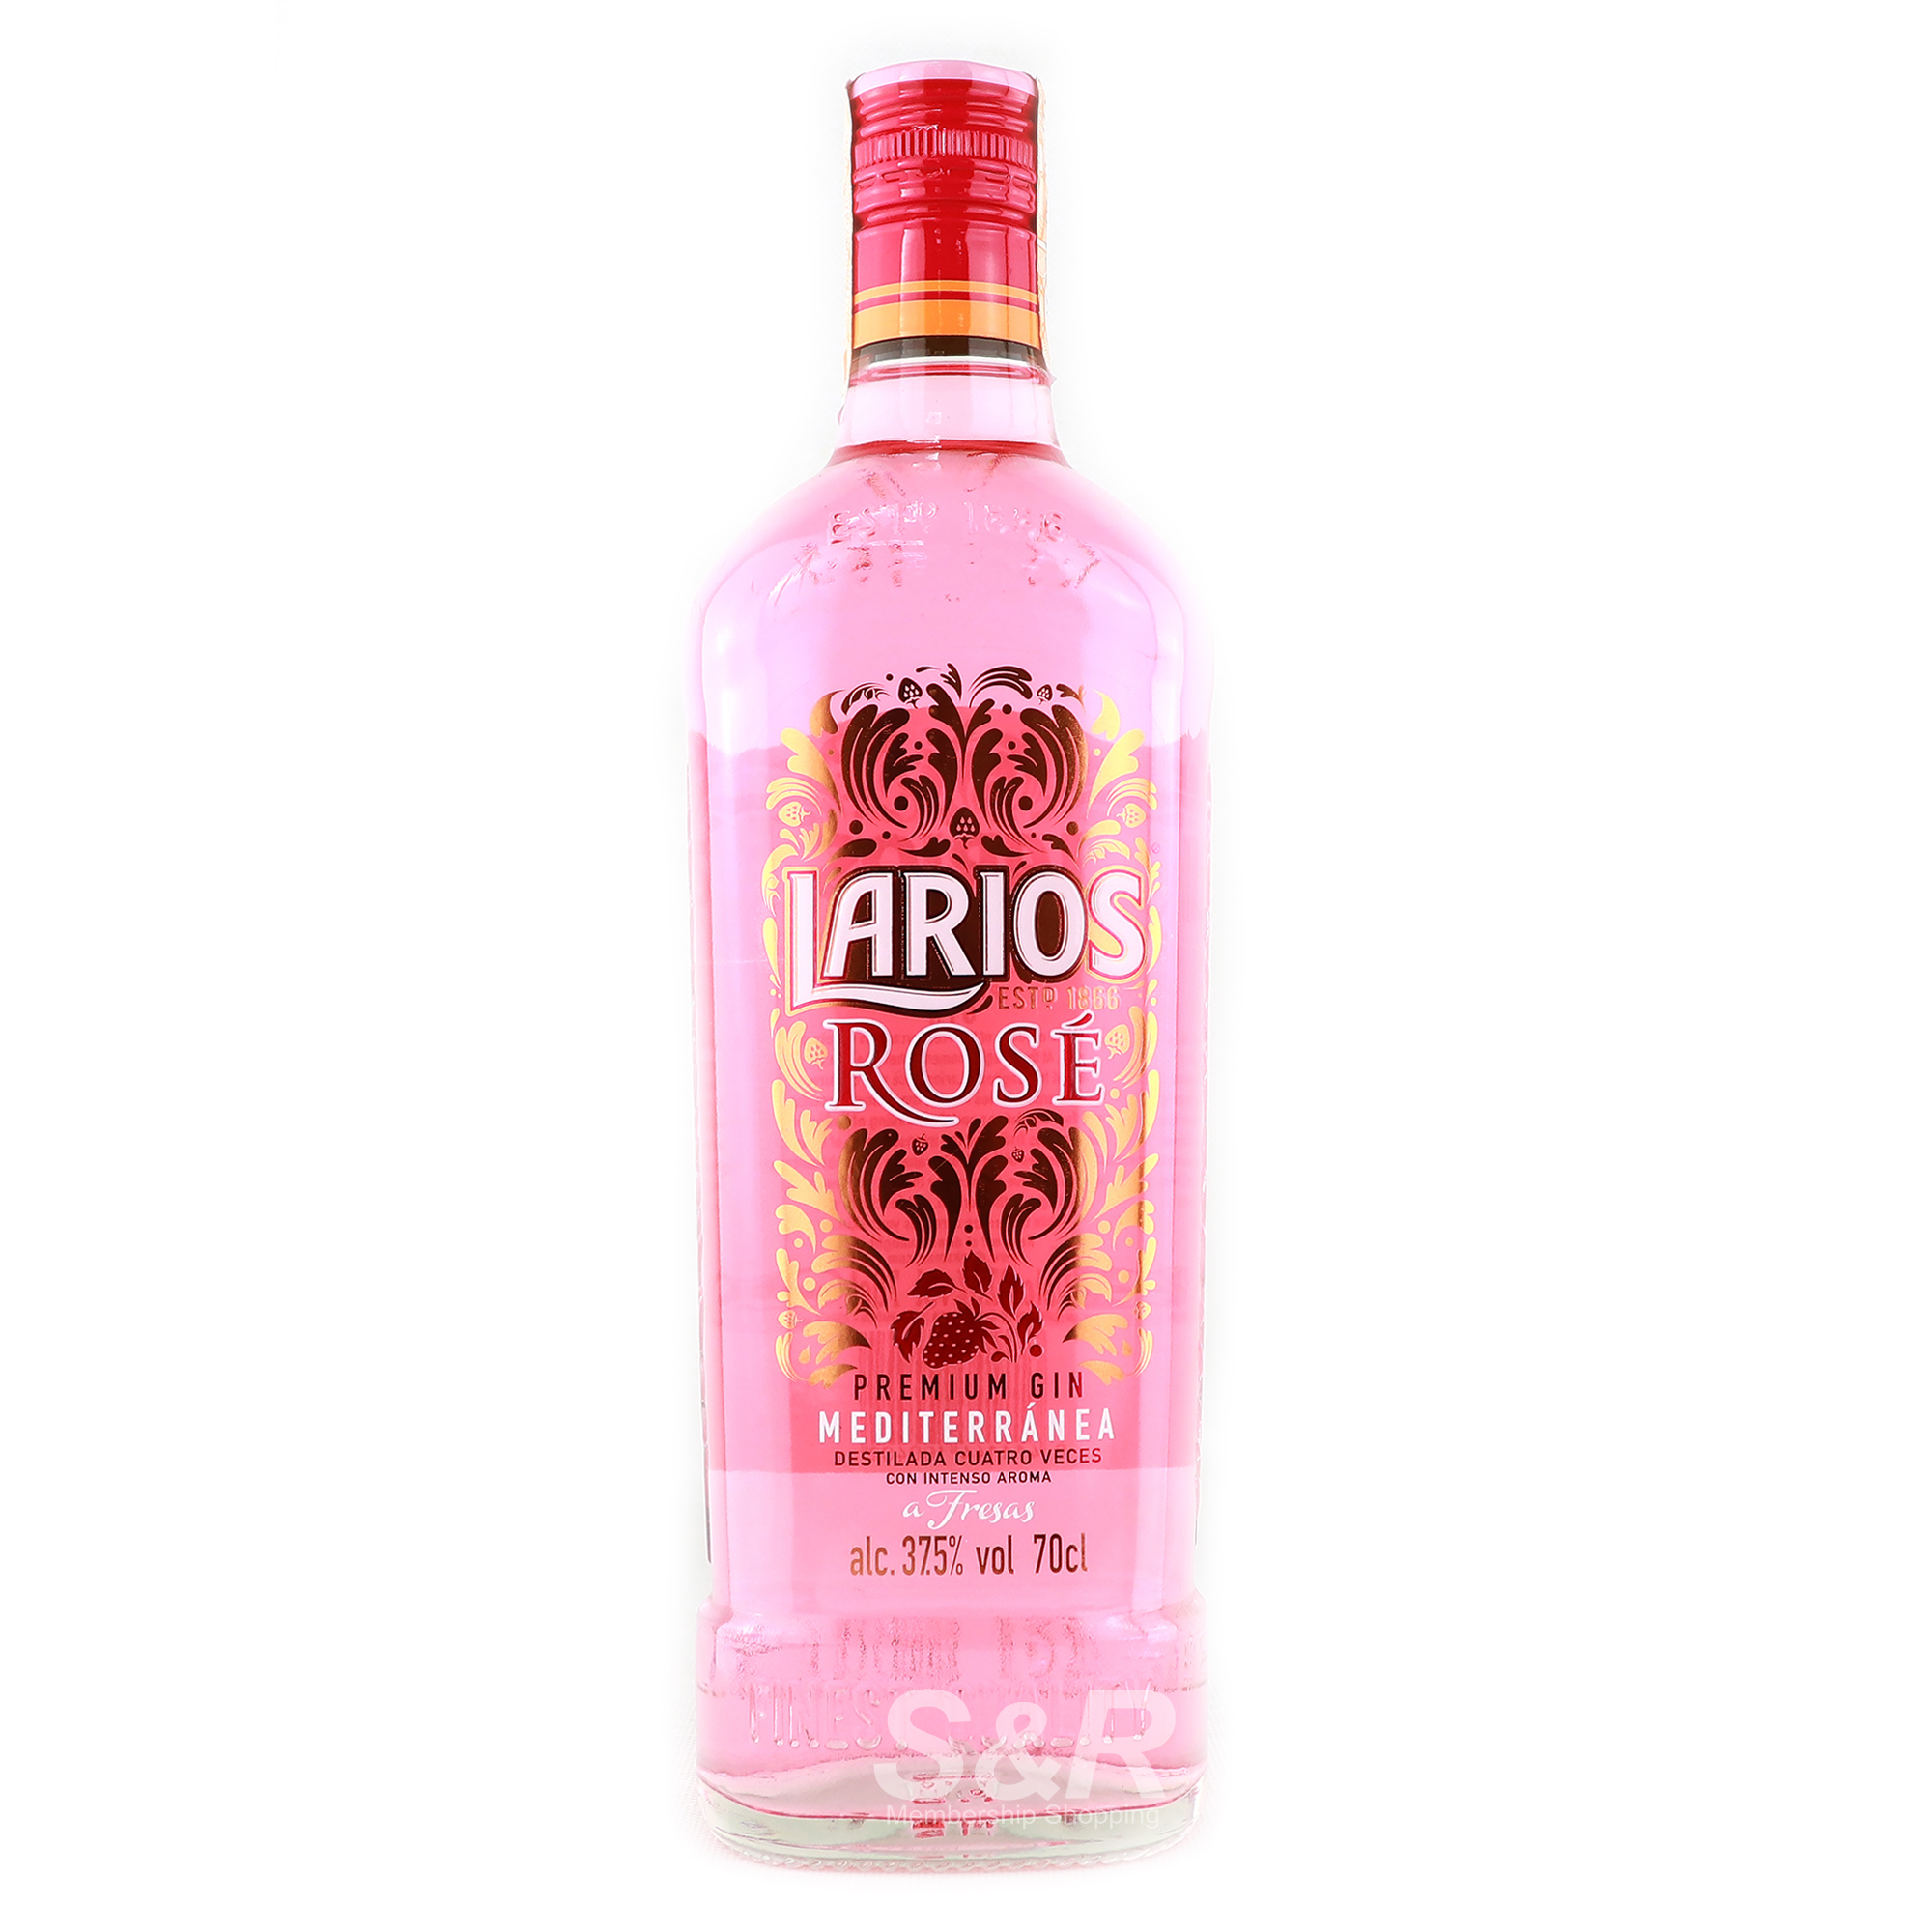 Larios Rose Premium Gin 700mL